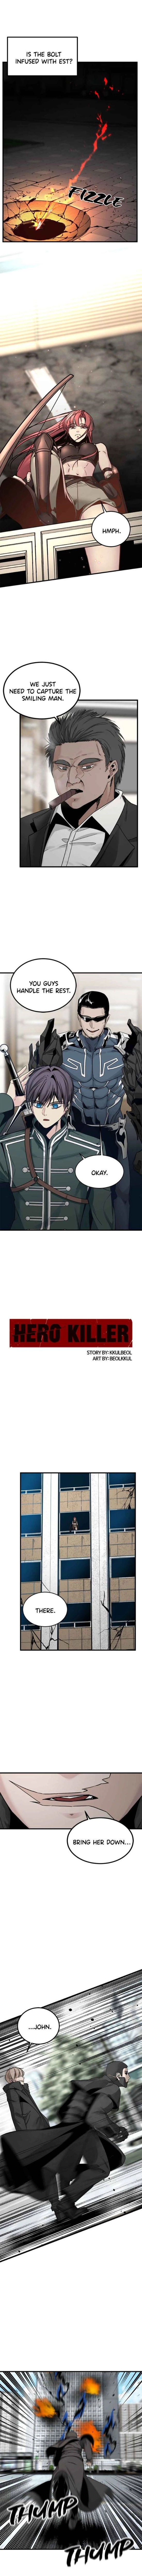 Hero Killer 16 3